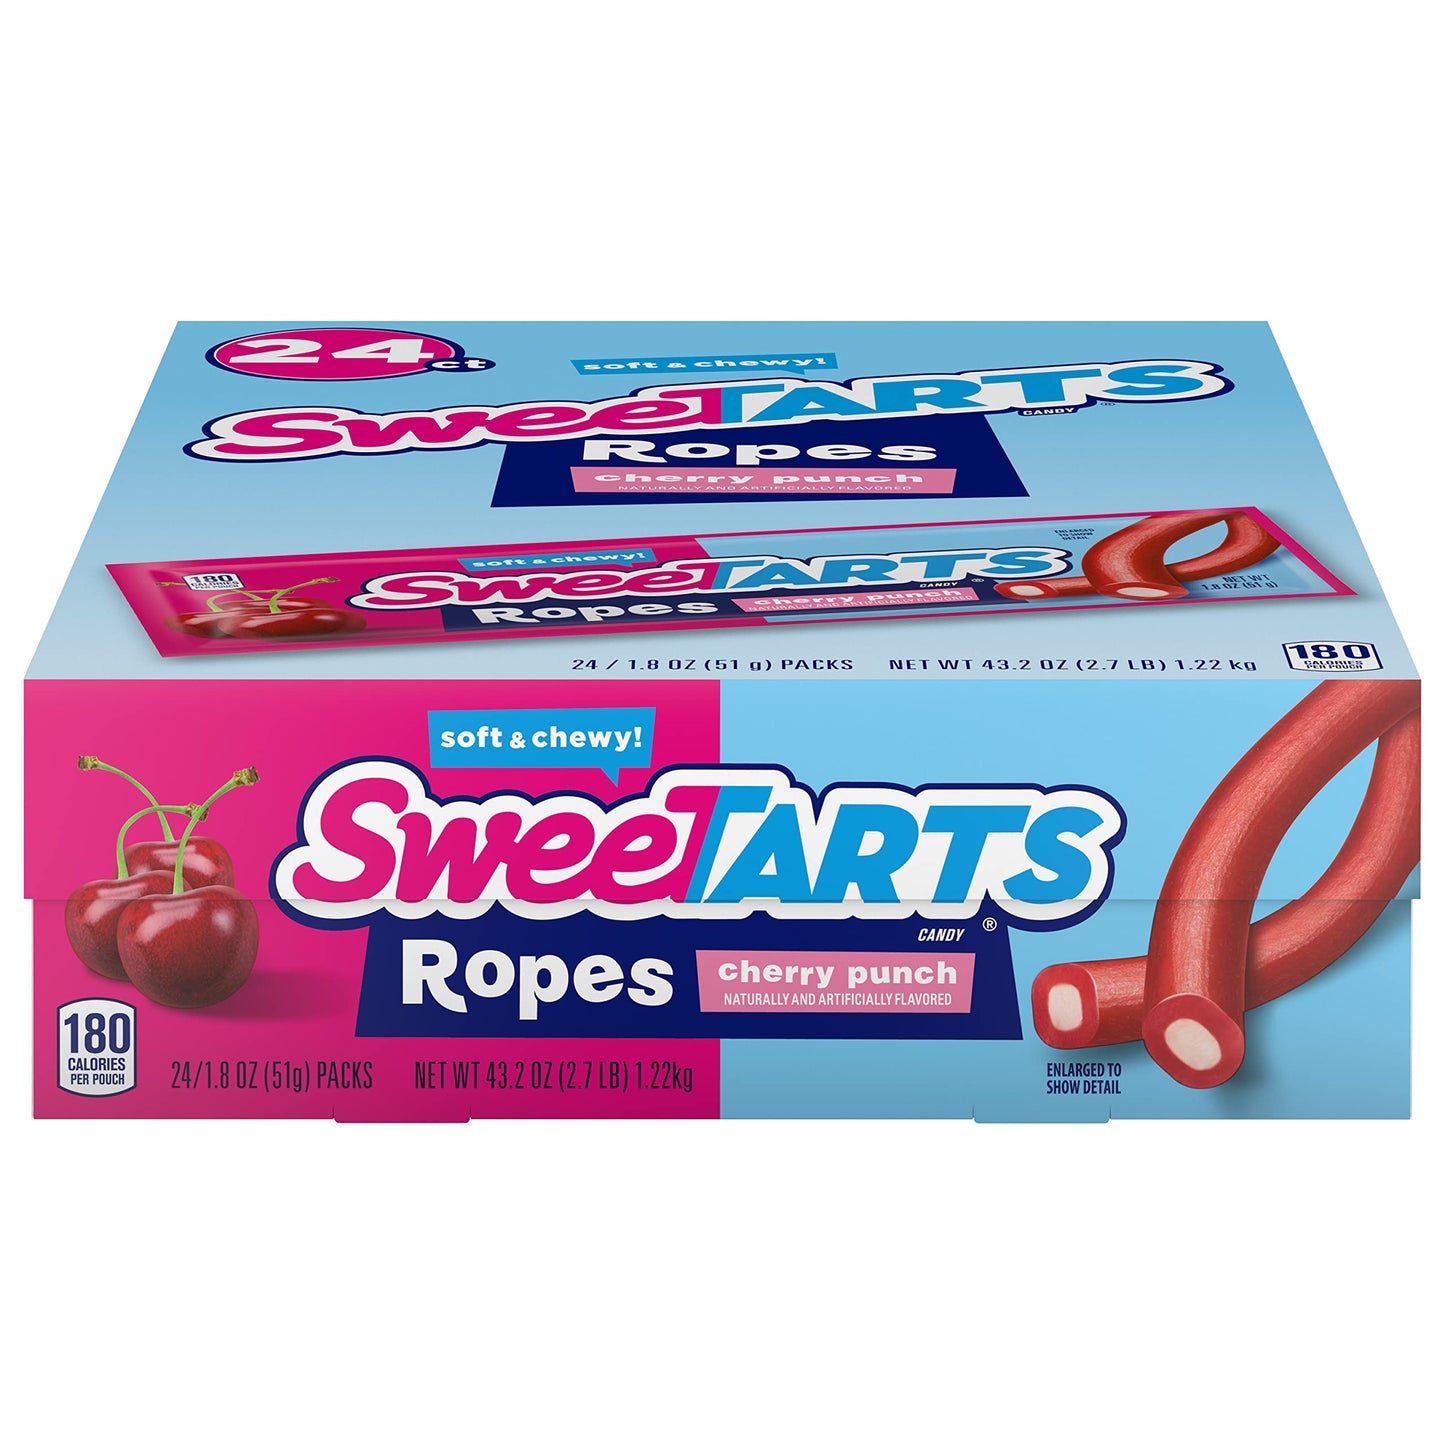 Sweetarts Ropes Strawberry 51g (Case of 24)